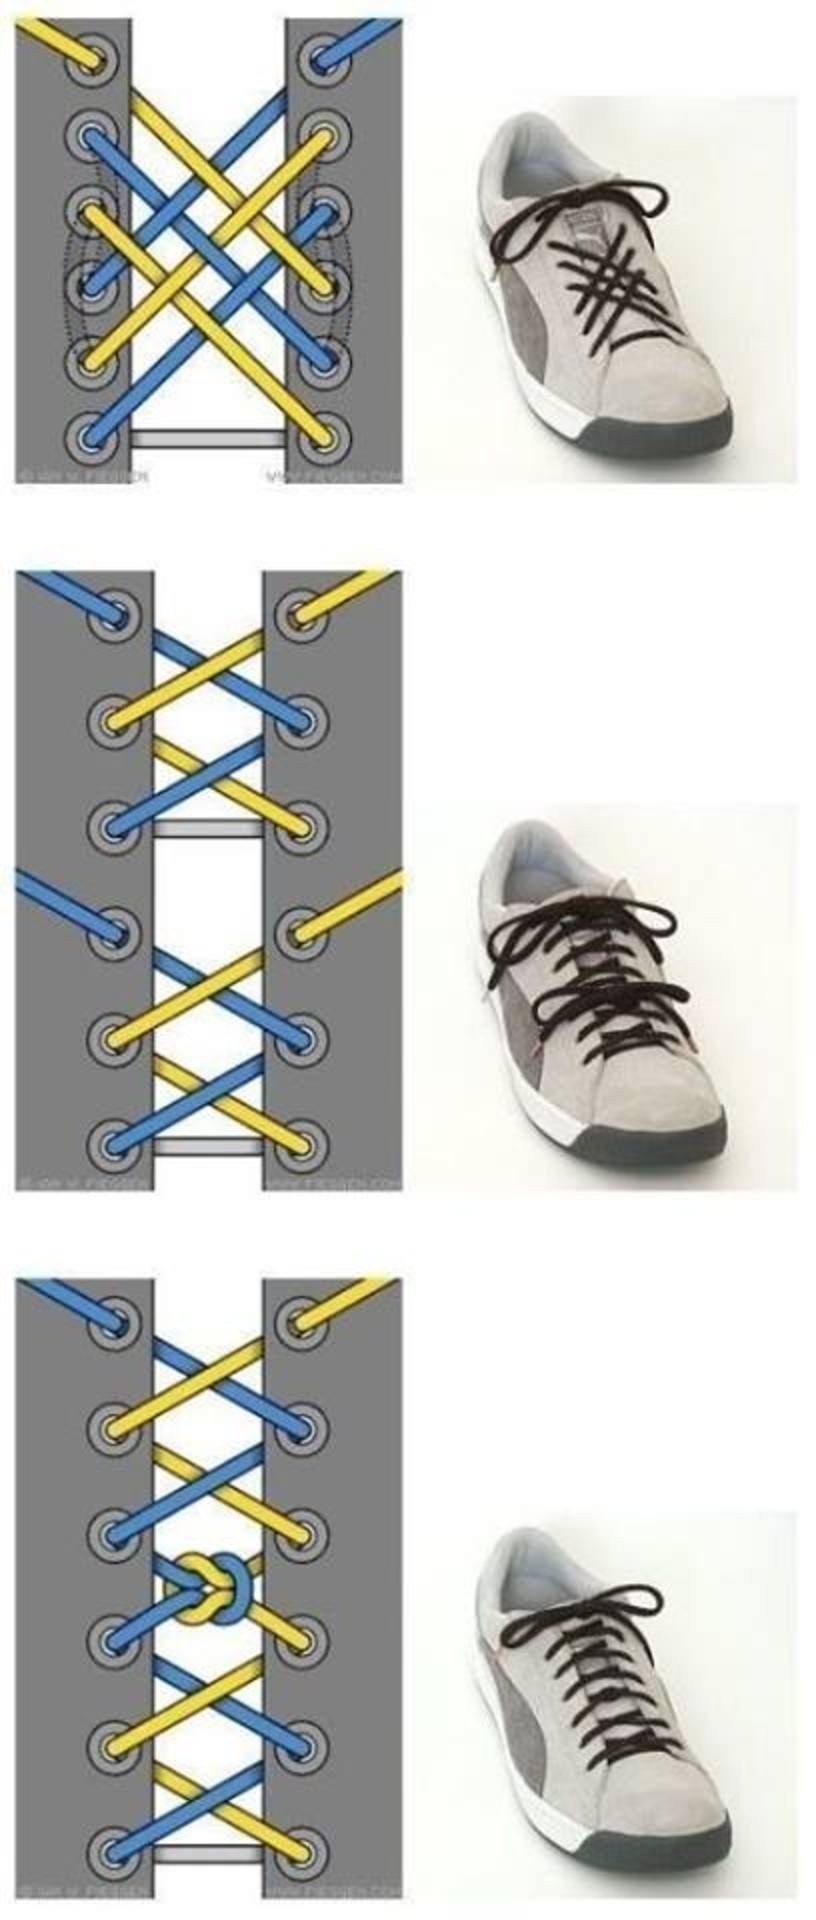 Шнуровка на 6 дырок. Типы шнурования шнурков на 5 дырок. Шнурки зашнуровать 5 дырок. Способы зашнуровать кроссовки 5 дырок. Шнурование молния 5 дырок.